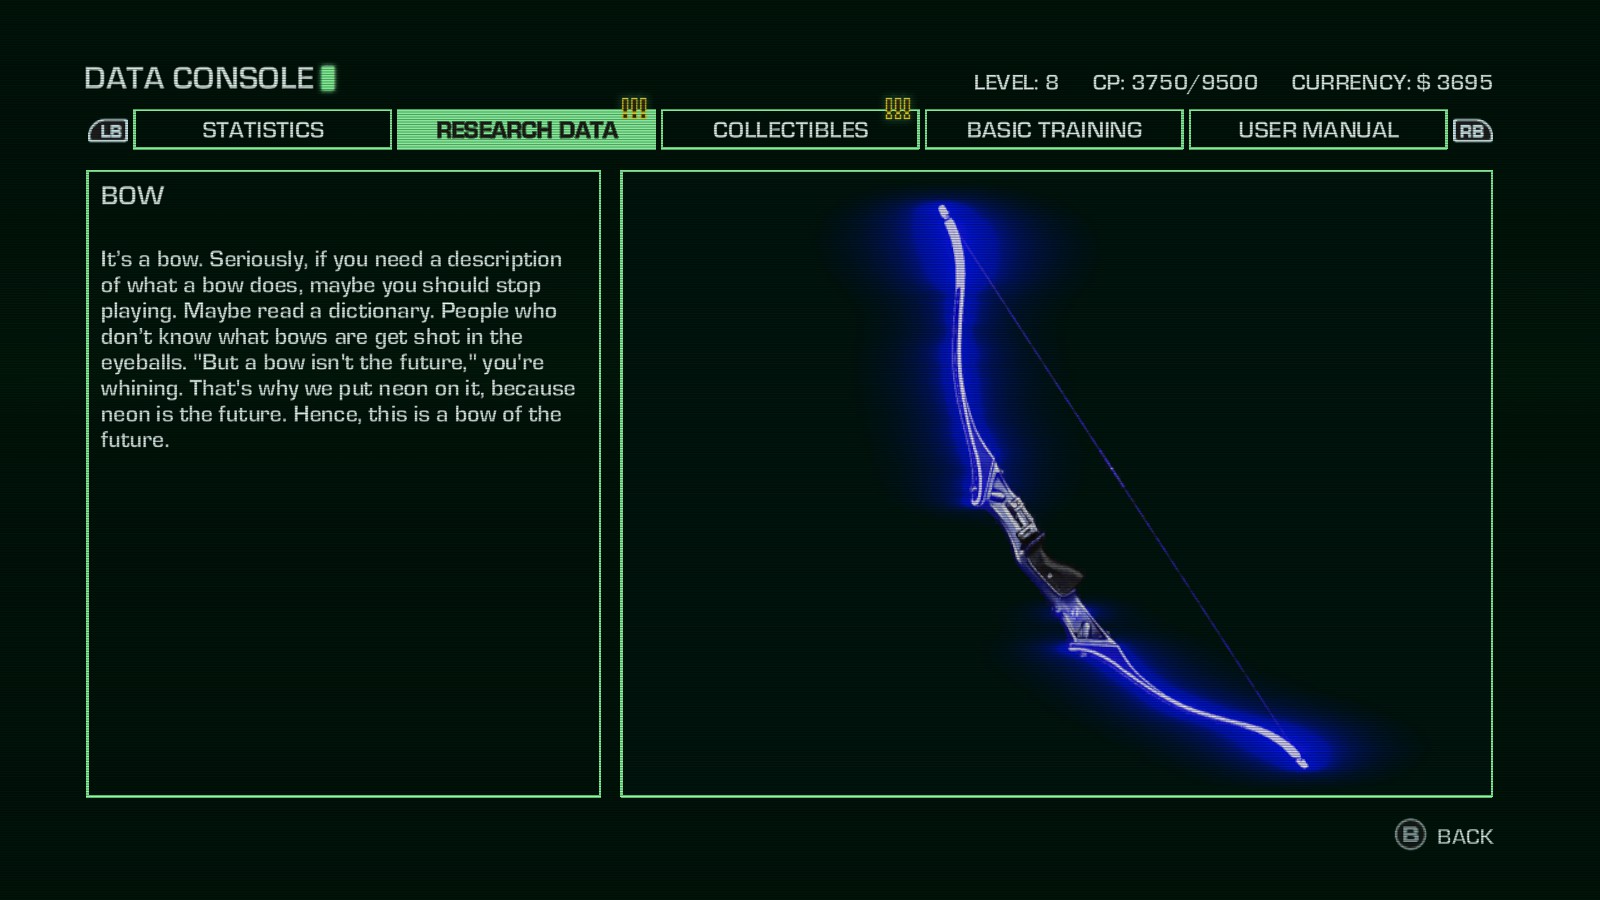 映画『トロン』の影響をあらわす一例として、『Far Cry 3: Blood Dragon』に登場する弓を紹介する。 「”弓は未来ではない”と君は考えるだろう。だからネオンをつけた。ネオンは未来だ。ゆえにこの弓は未来だ」 ネオンは未来のメタファーとして用いられている。